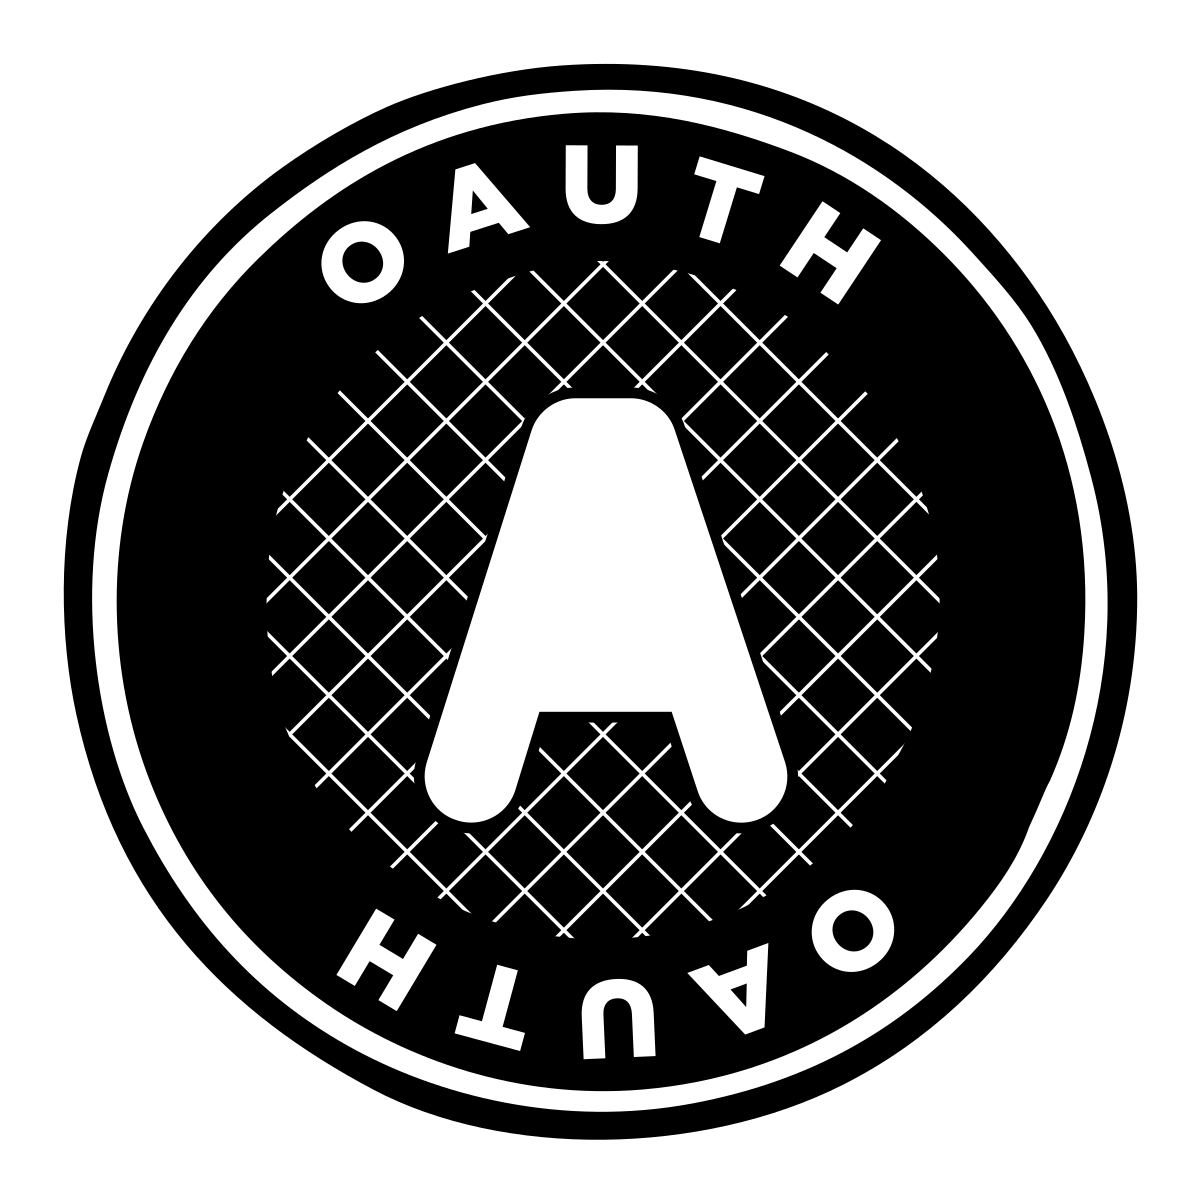 GitHub: Хакеры украли данные десятков организаций с помощью похищенных токенов OAuth